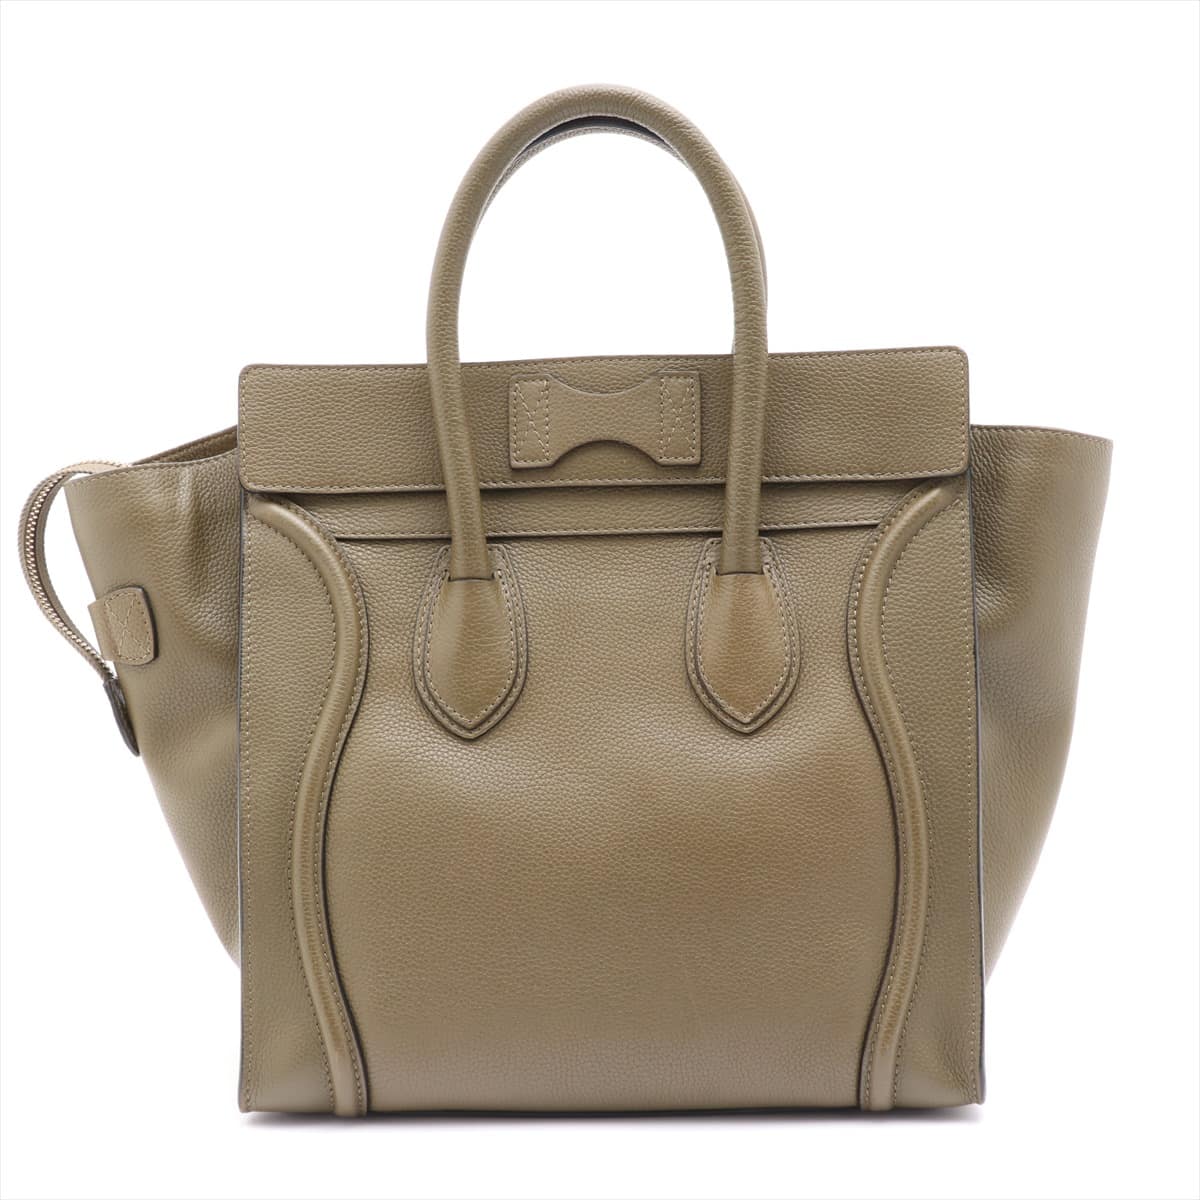 CELINE Luggage Mini shopper Leather Tote bag Khaki